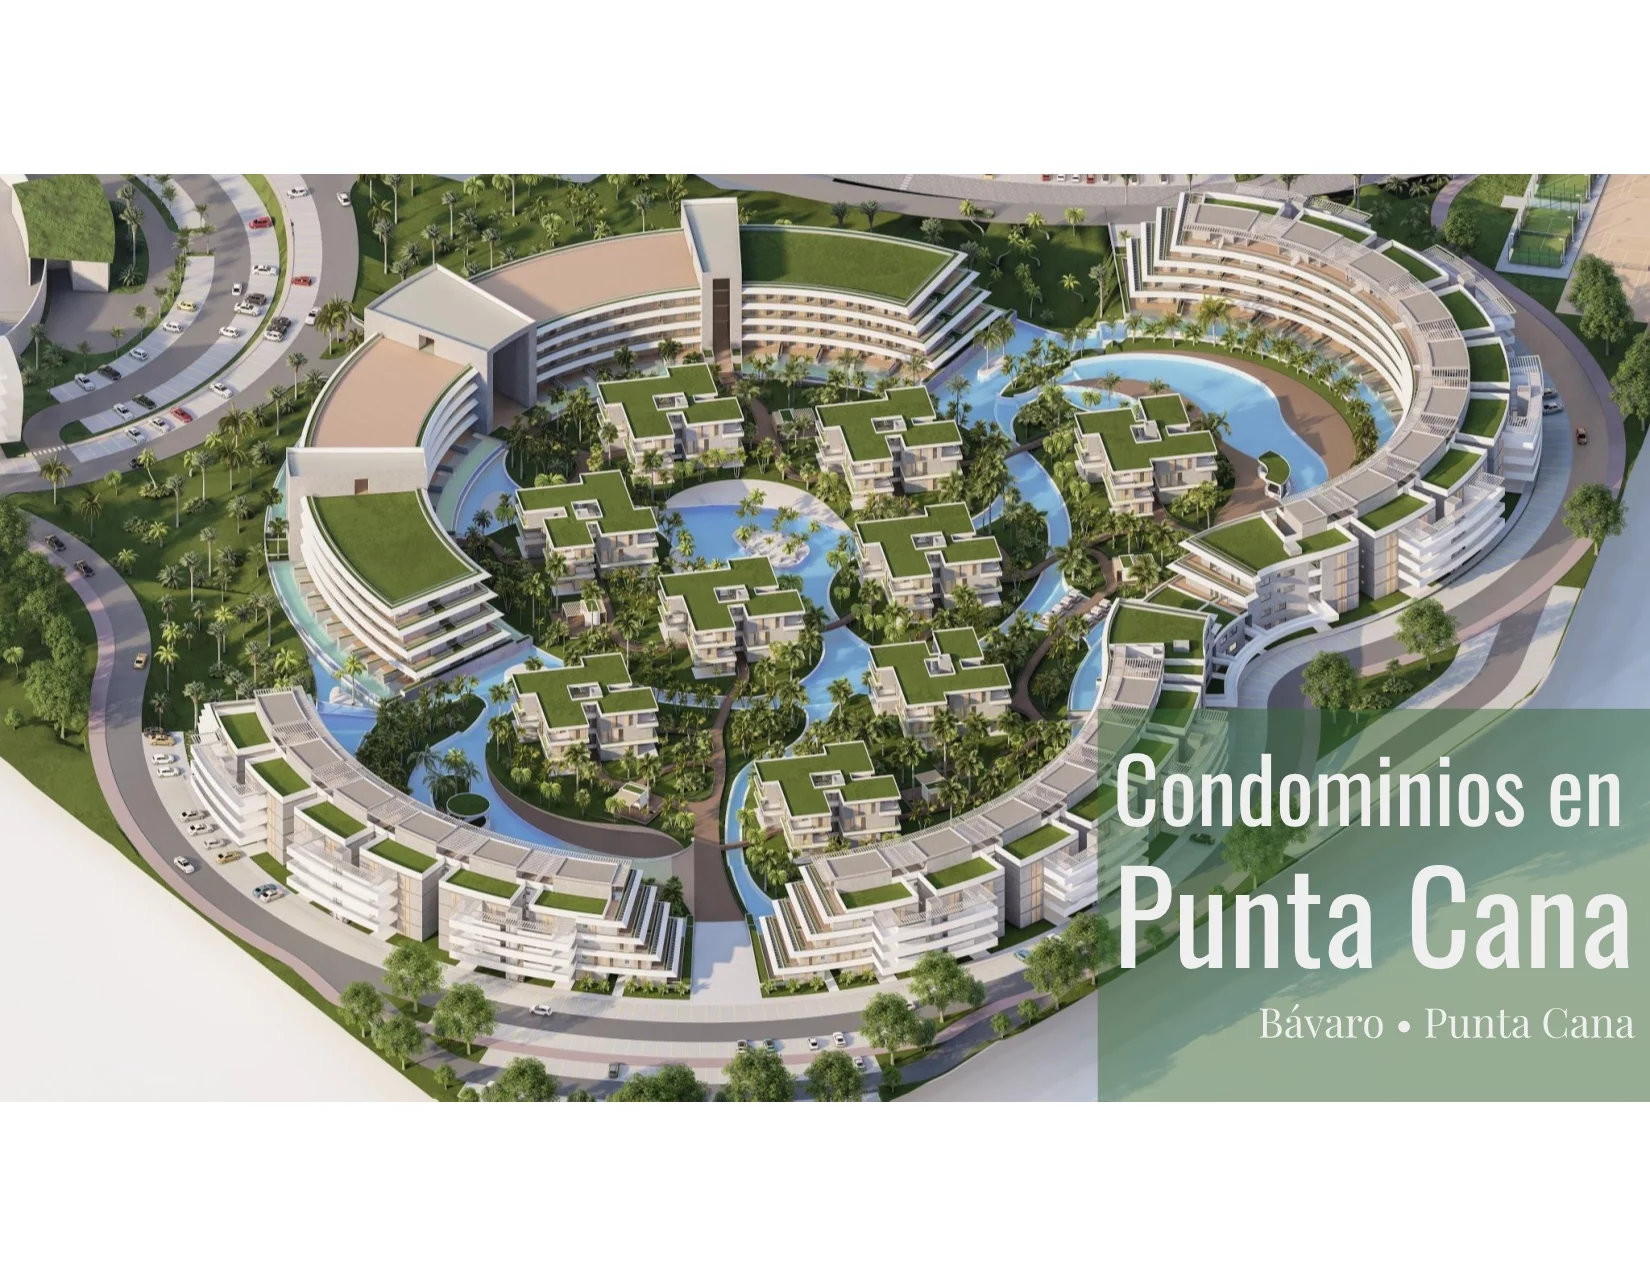 Condominios en Punta Cana